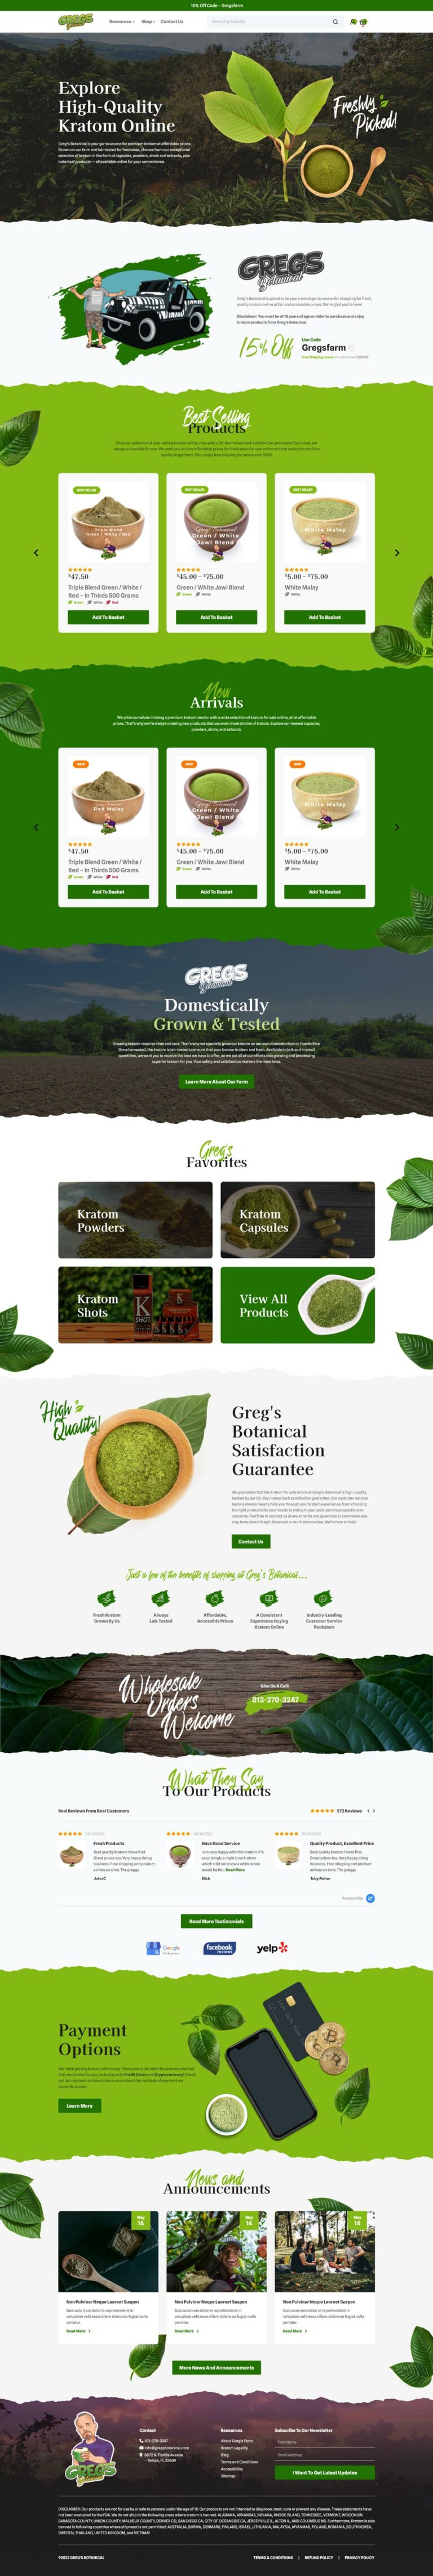 Home page for Kratom Brand Greg’s Botanical